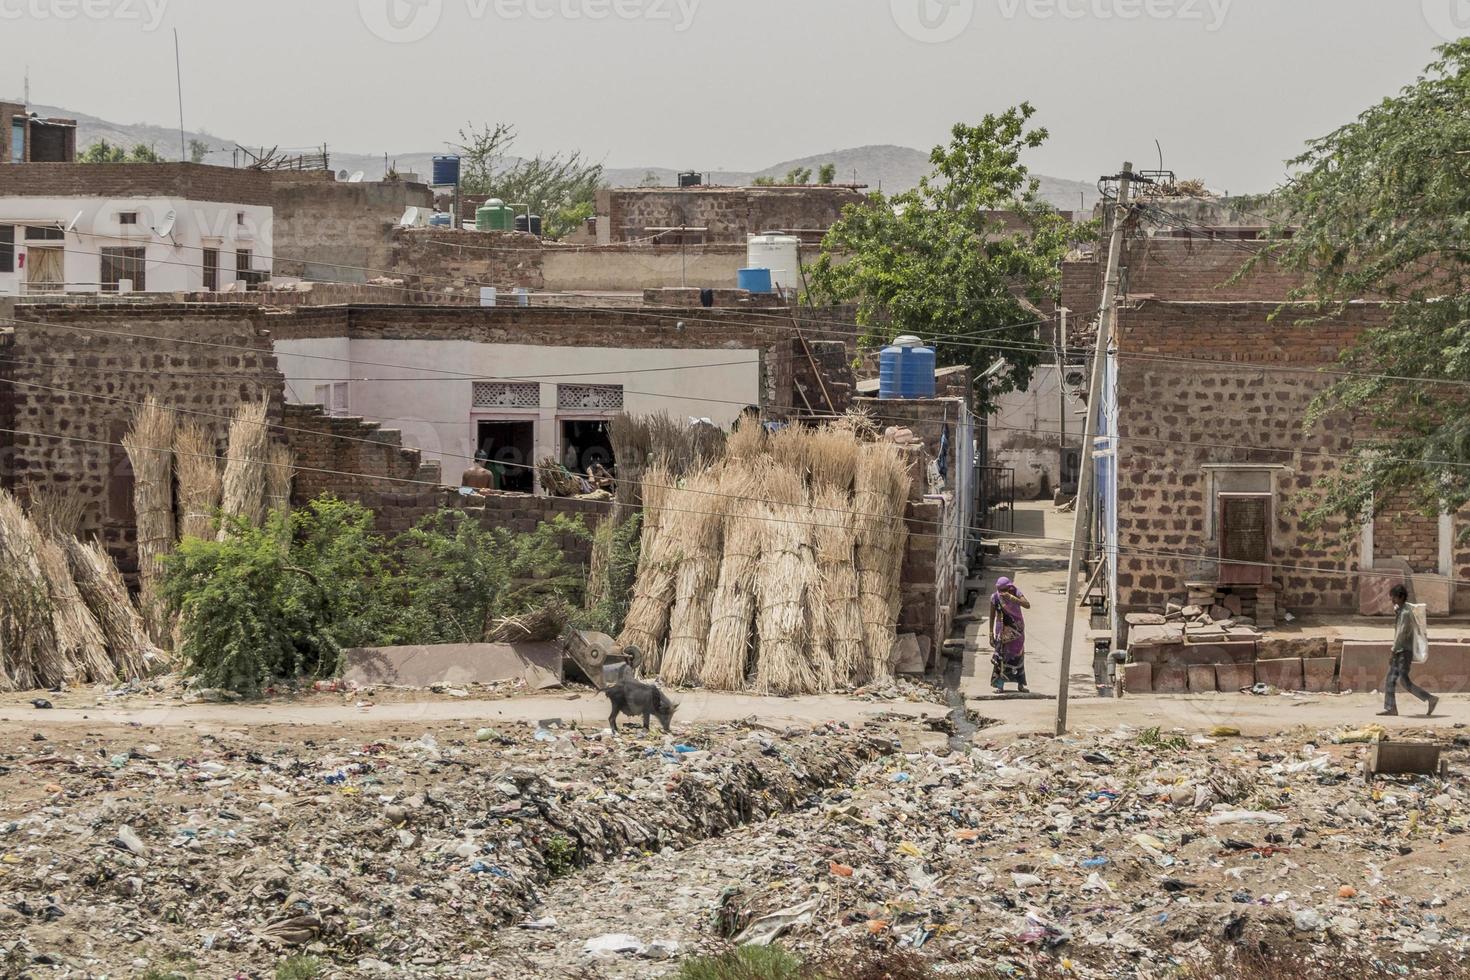 basura, pobreza y calor en rajasthan india. foto